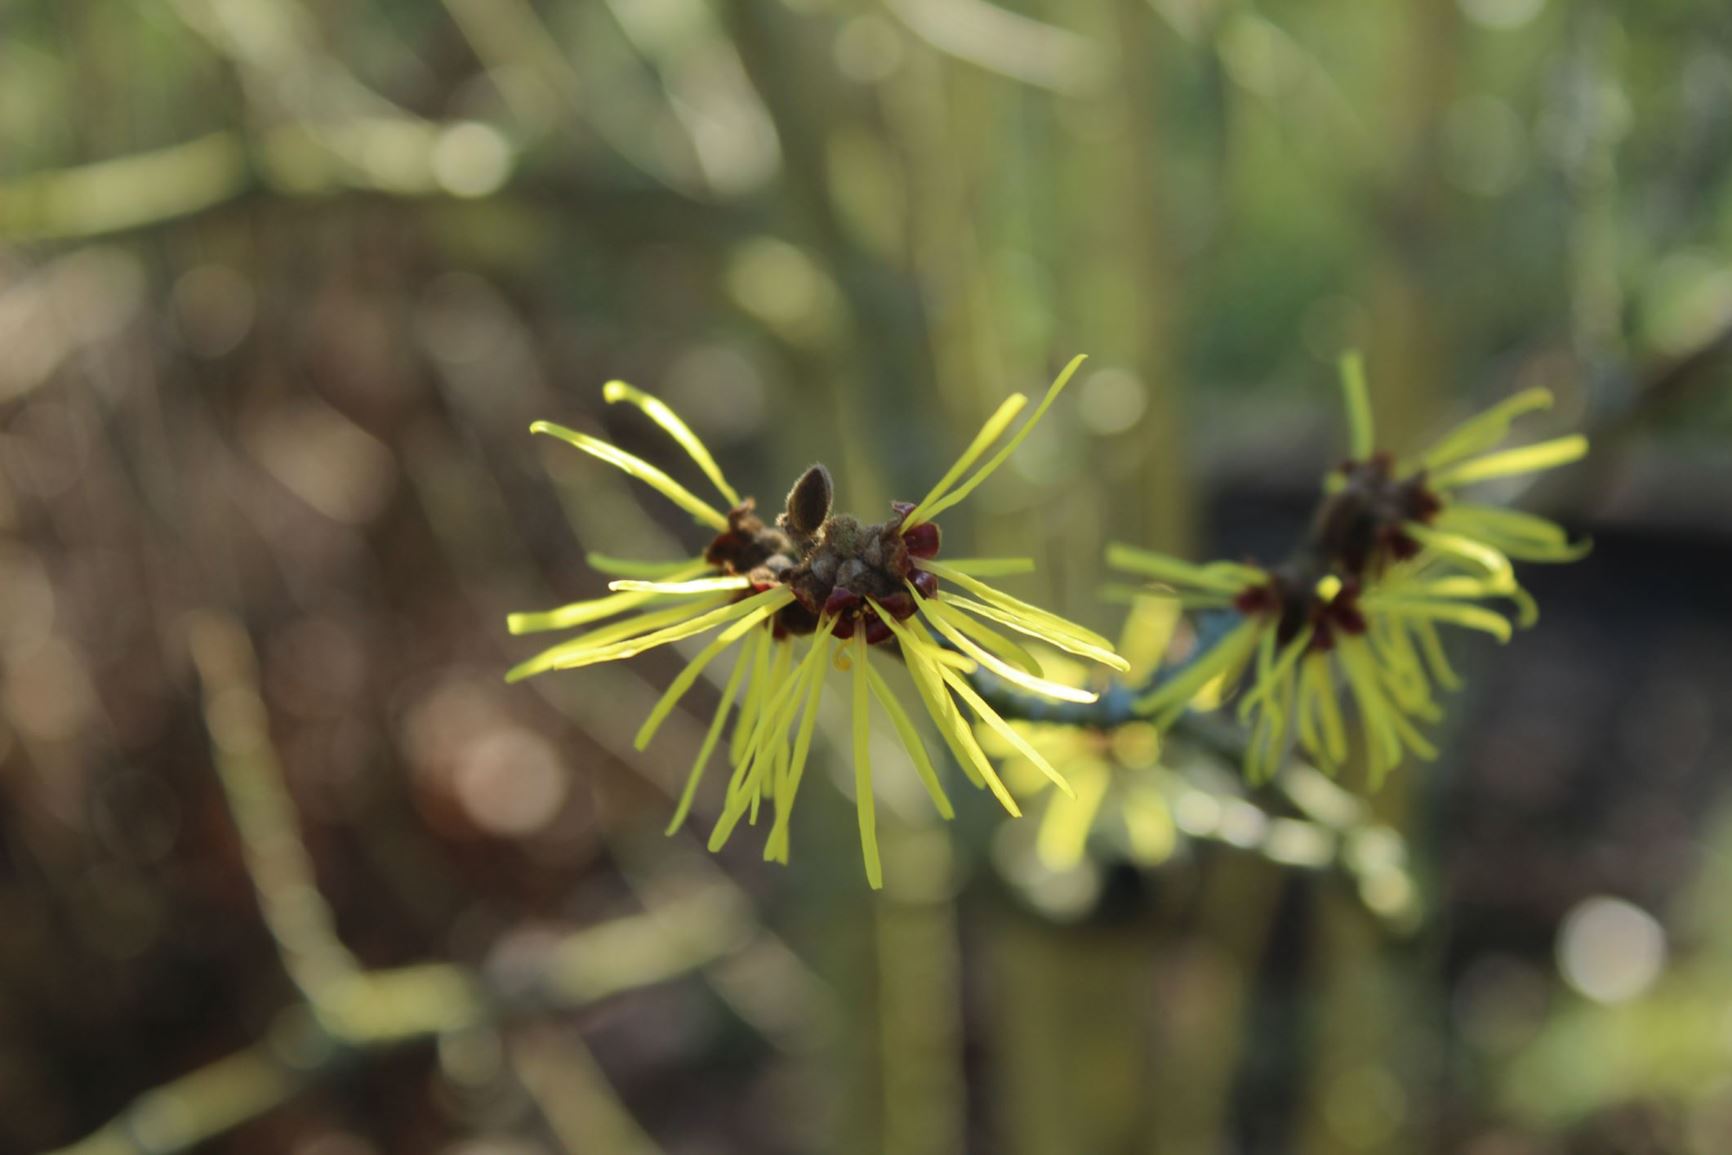 Hamamelis × intermedia - Toverhazelaar, Hybrid witch hazel